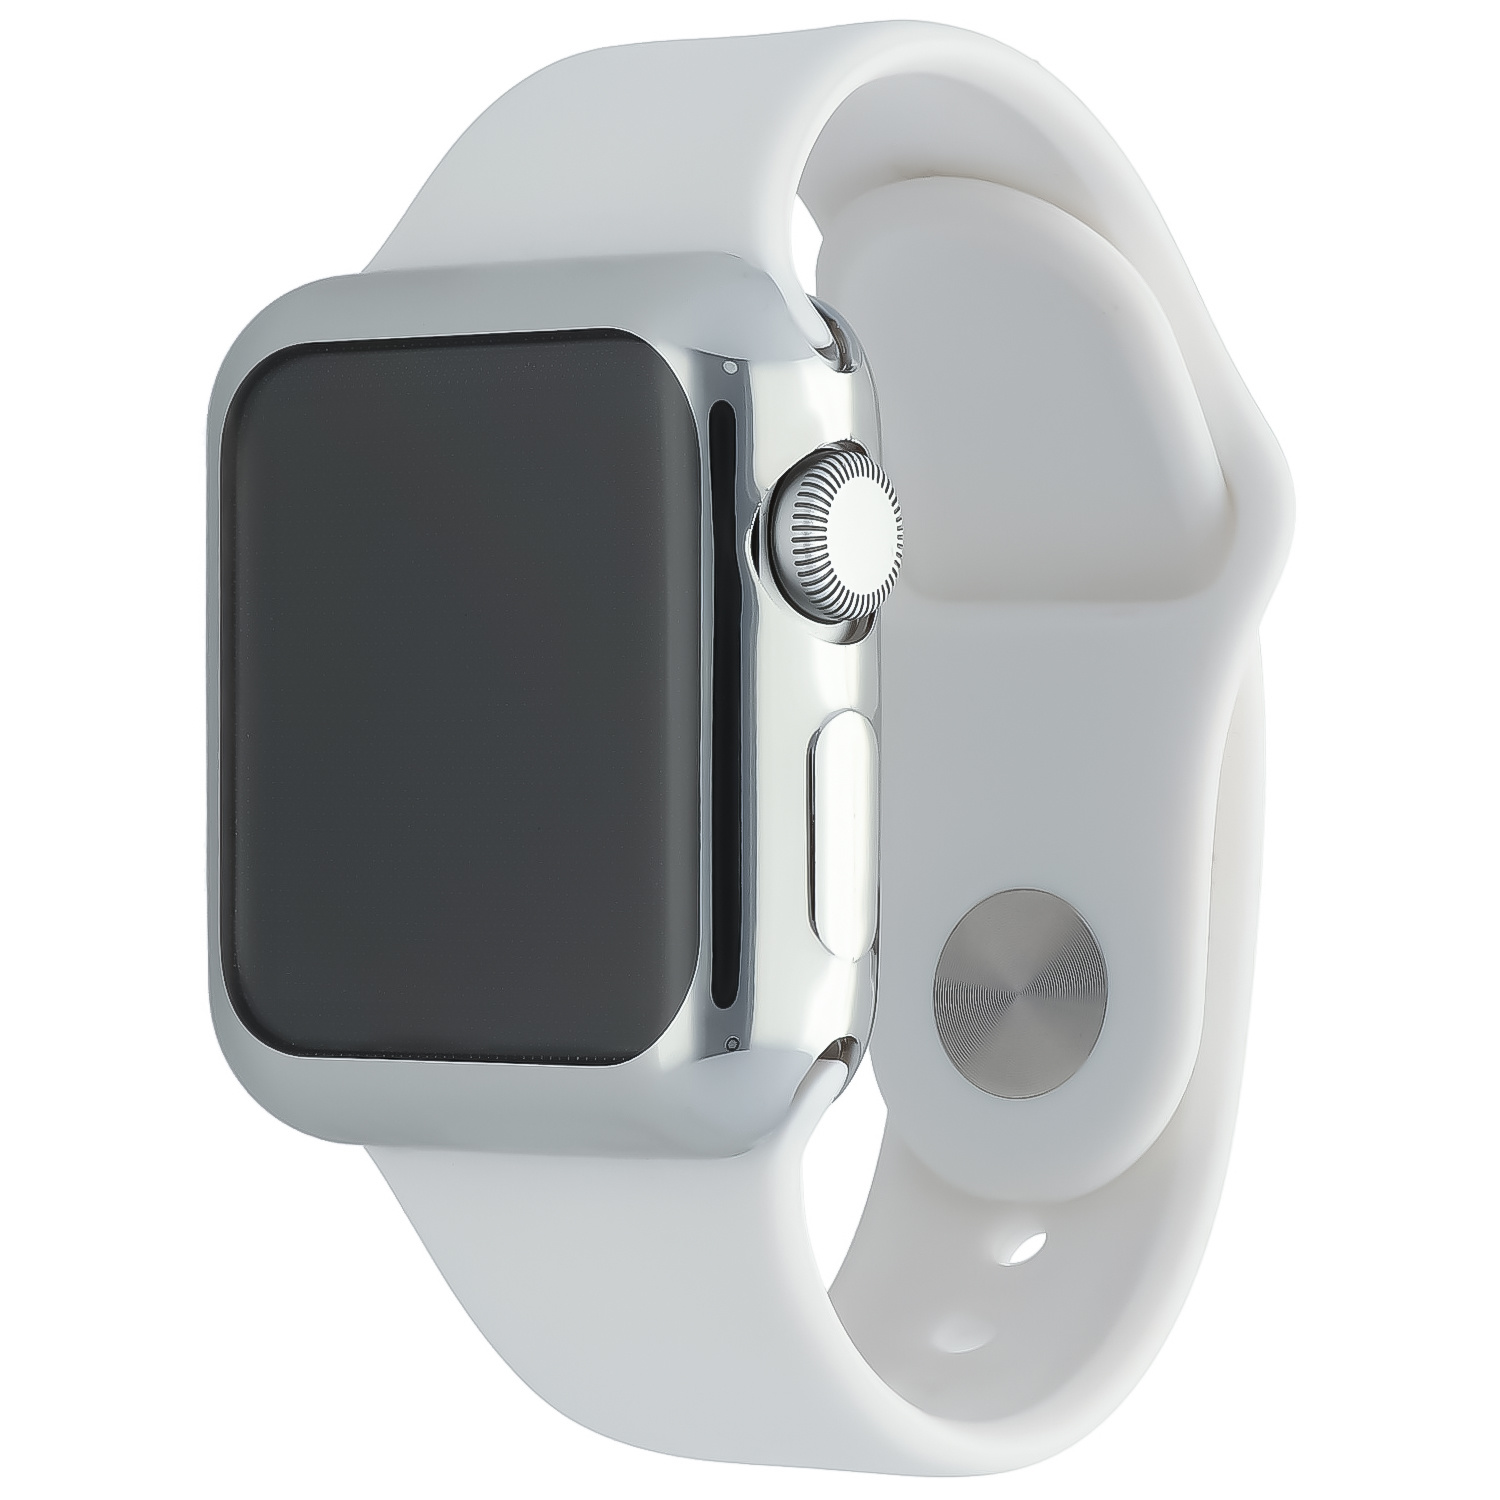 Estuche blando delgado para el Apple Watch - plata